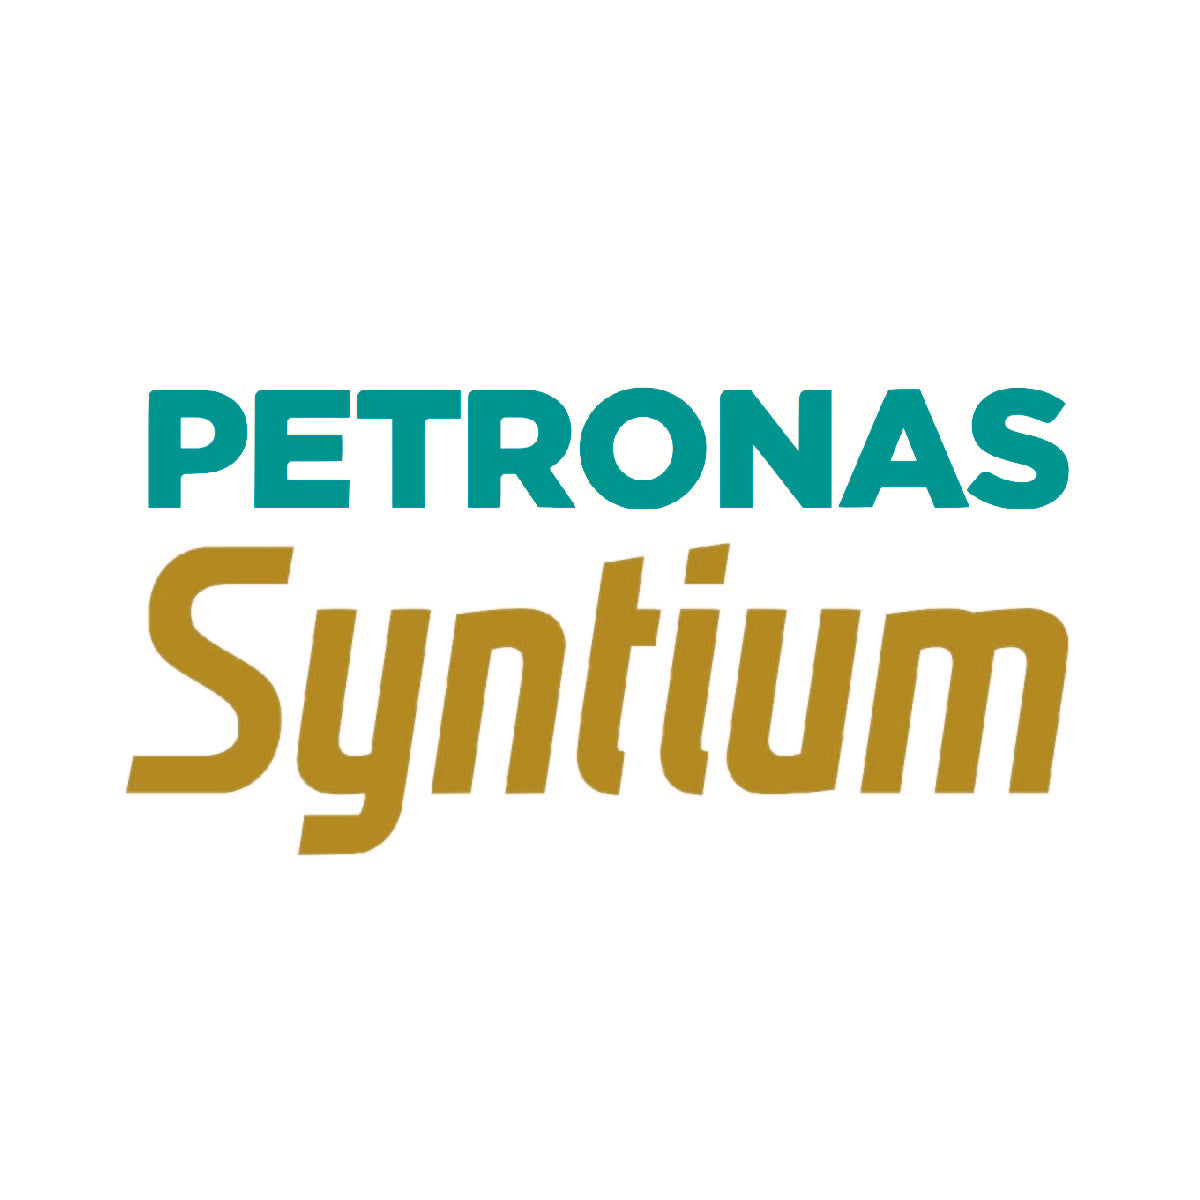 PETRONAS Syntium